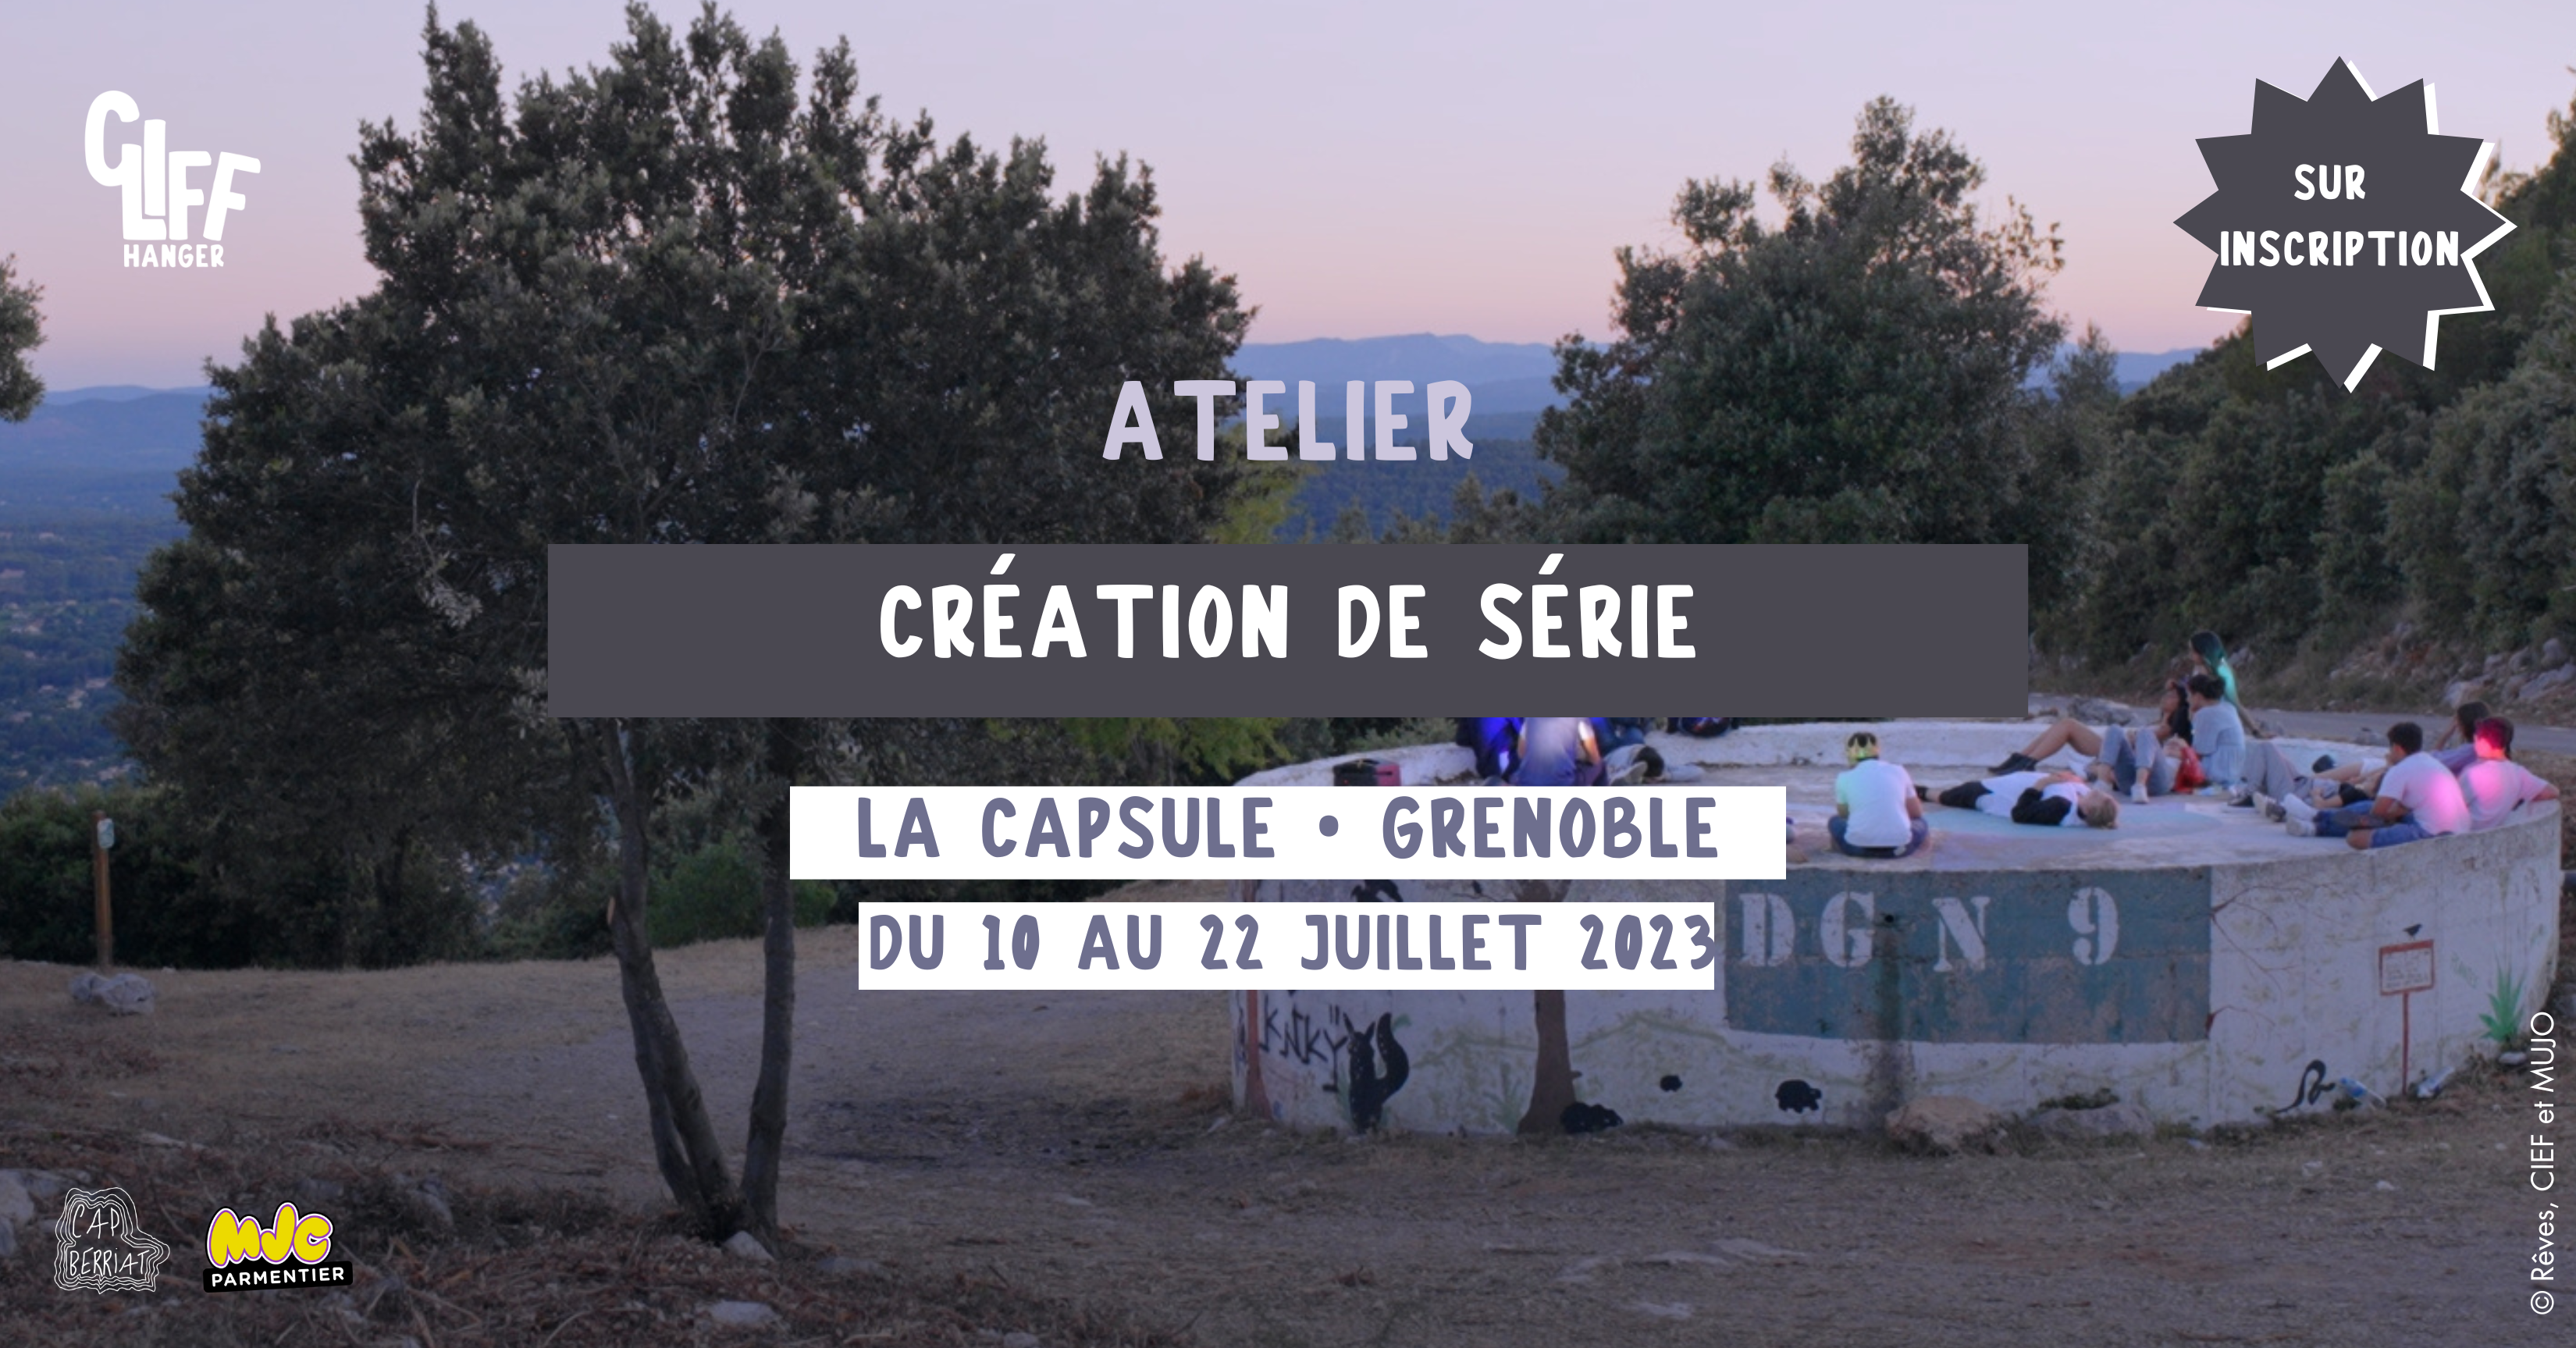 You are currently viewing Atelier de création de série en Juillet, les inscriptions sont ouvertes